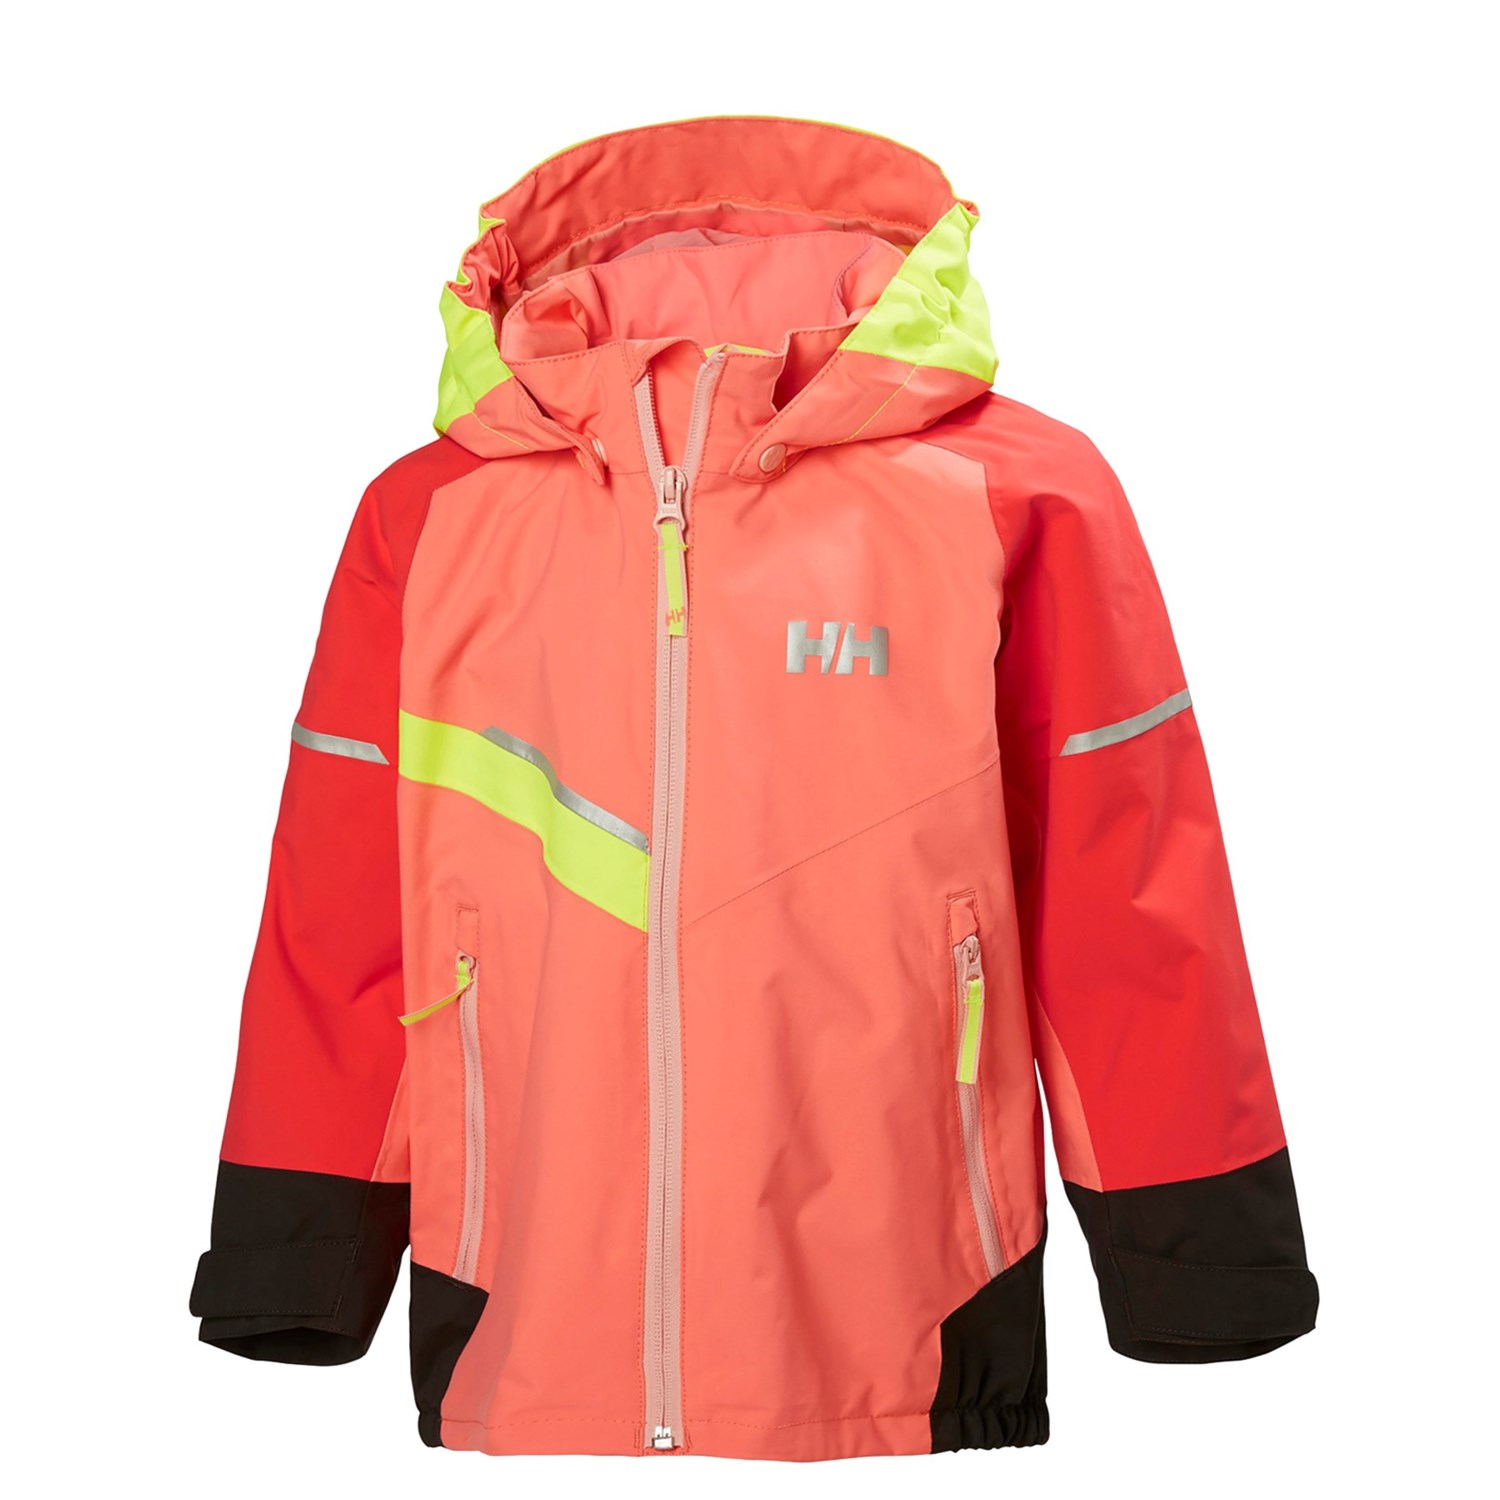 Helly Hansen Norse Jacket – Waterproof (For Little Kids)